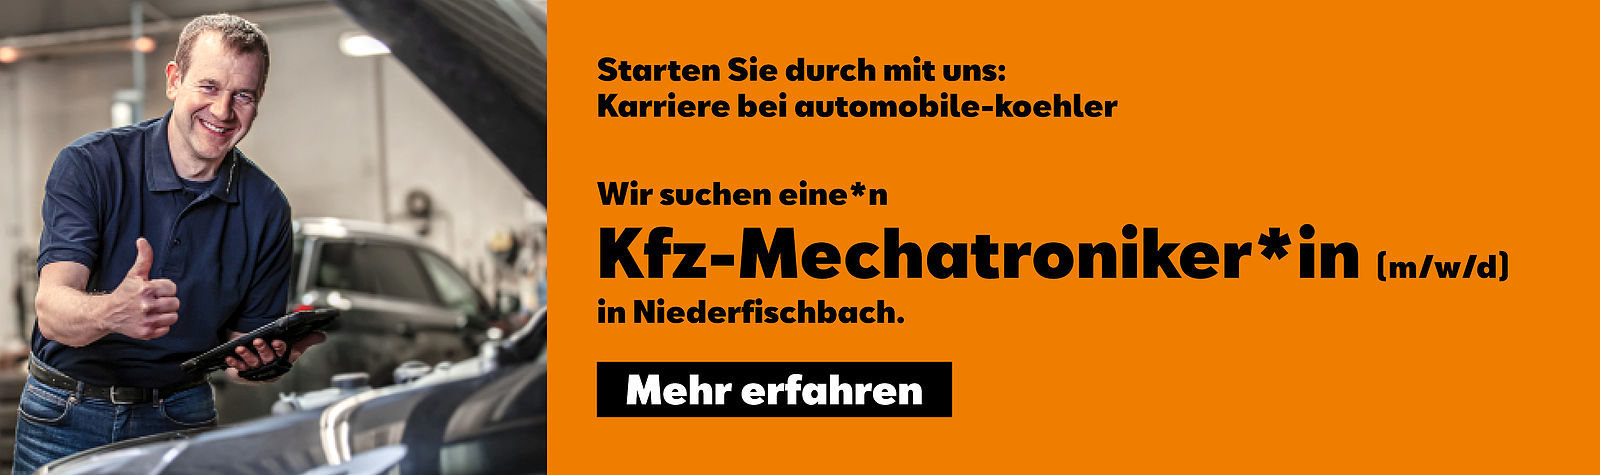 Stellenangebot Job Kfz-Mechatroniker*in (m/w/d) bei Automobile Köhler in Niederfischbach